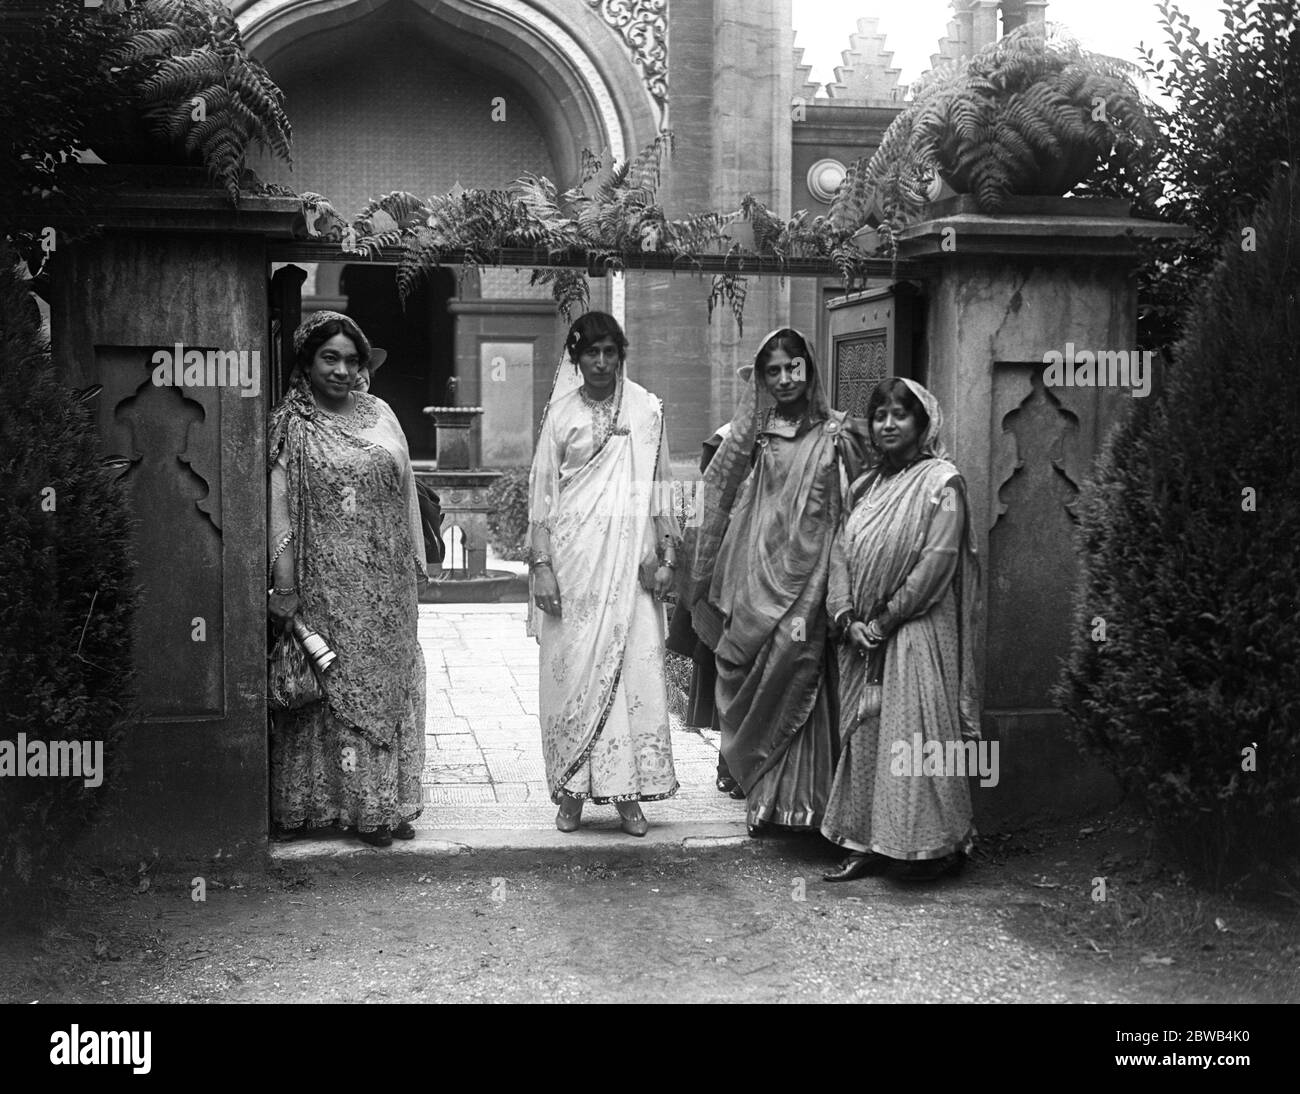 Donne indiane all'ingresso della Moschea durante il Festival musulmano dell'Eid a Woking in Surrey . 21 luglio 1917 la moschea Shah Jahan fu la prima moschea costruita appositamente in Europa al di fuori della Spagna musulmana Foto Stock